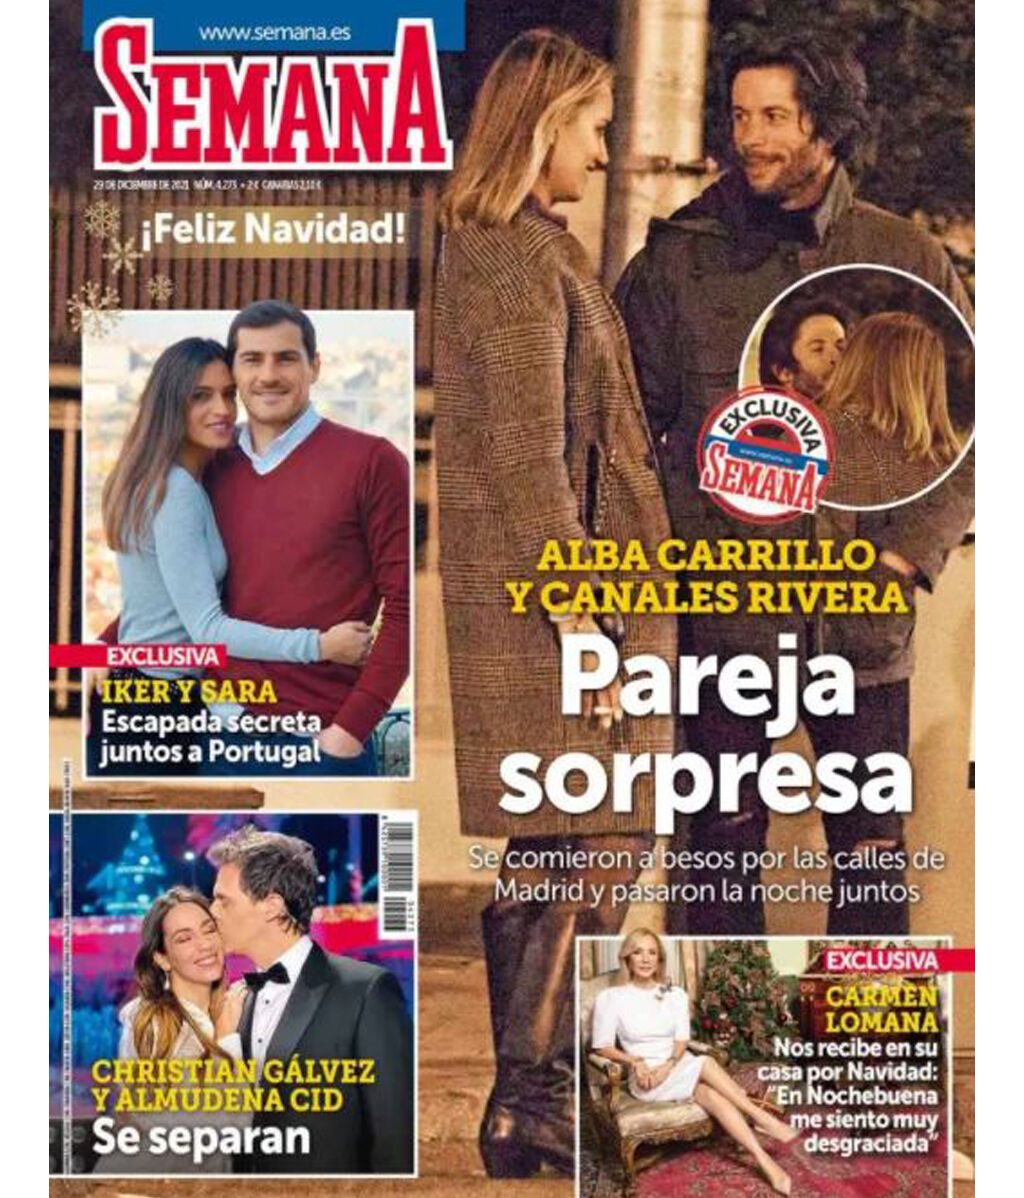 Alba Carrillo y José Antonio Canales Rivera en la portada de la revista 'Semana'